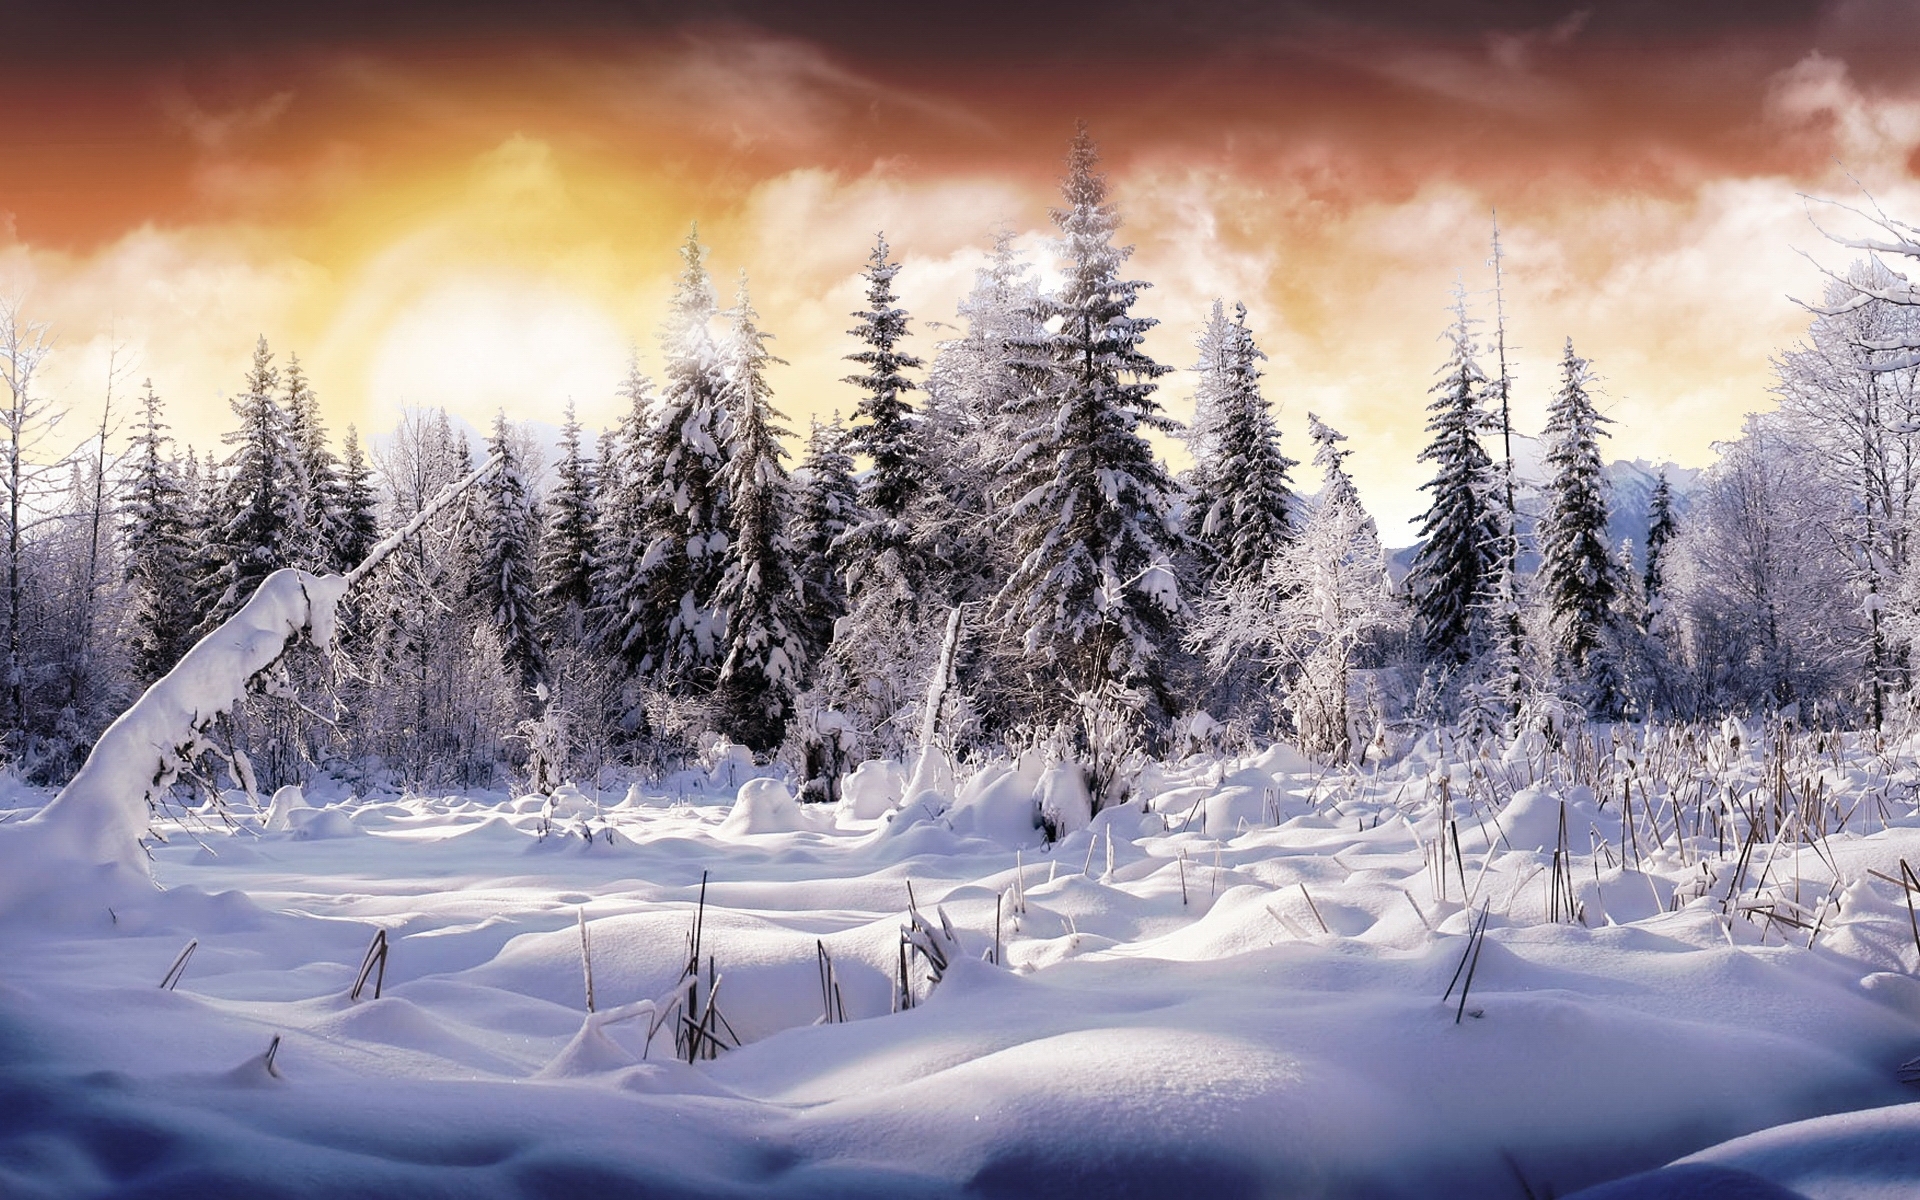 Скачать обои бесплатно Снег, Елки, Природа, Пейзаж, Деревья, Зима картинка на рабочий стол ПК